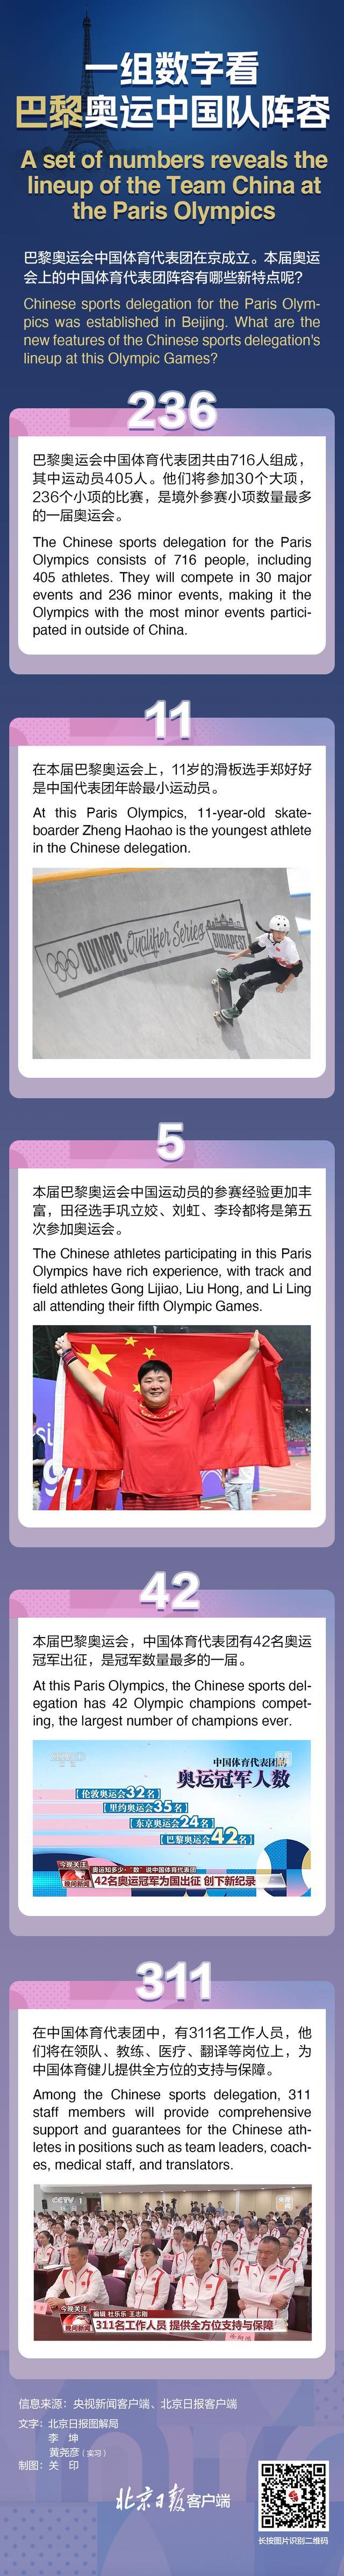 30秒速览巴黎奥运中国代表团阵容 星光熠熠，剑指金牌